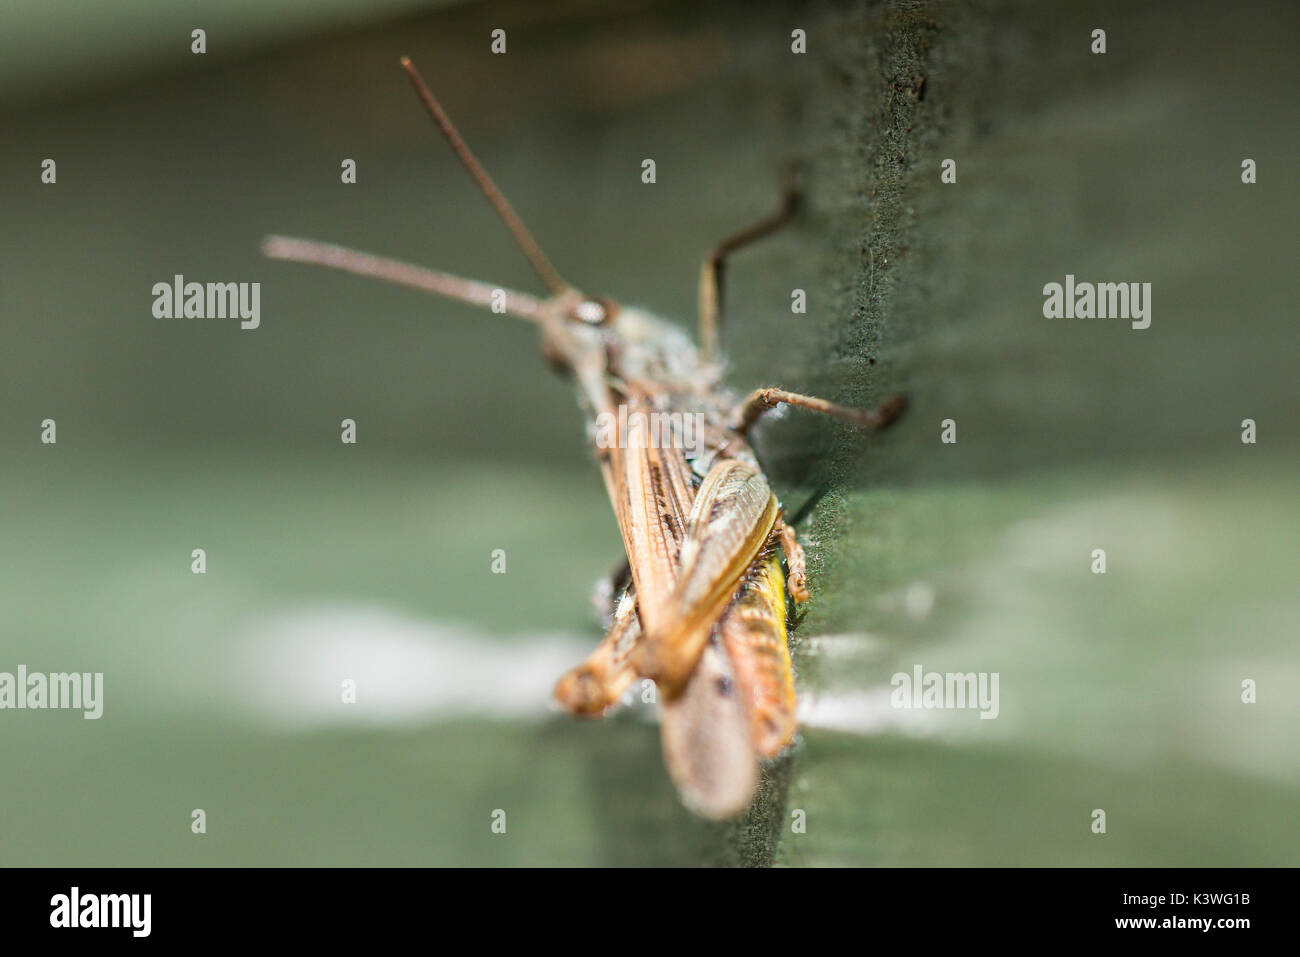 A common field grasshopper (Chorthippus brunneus) Stock Photo